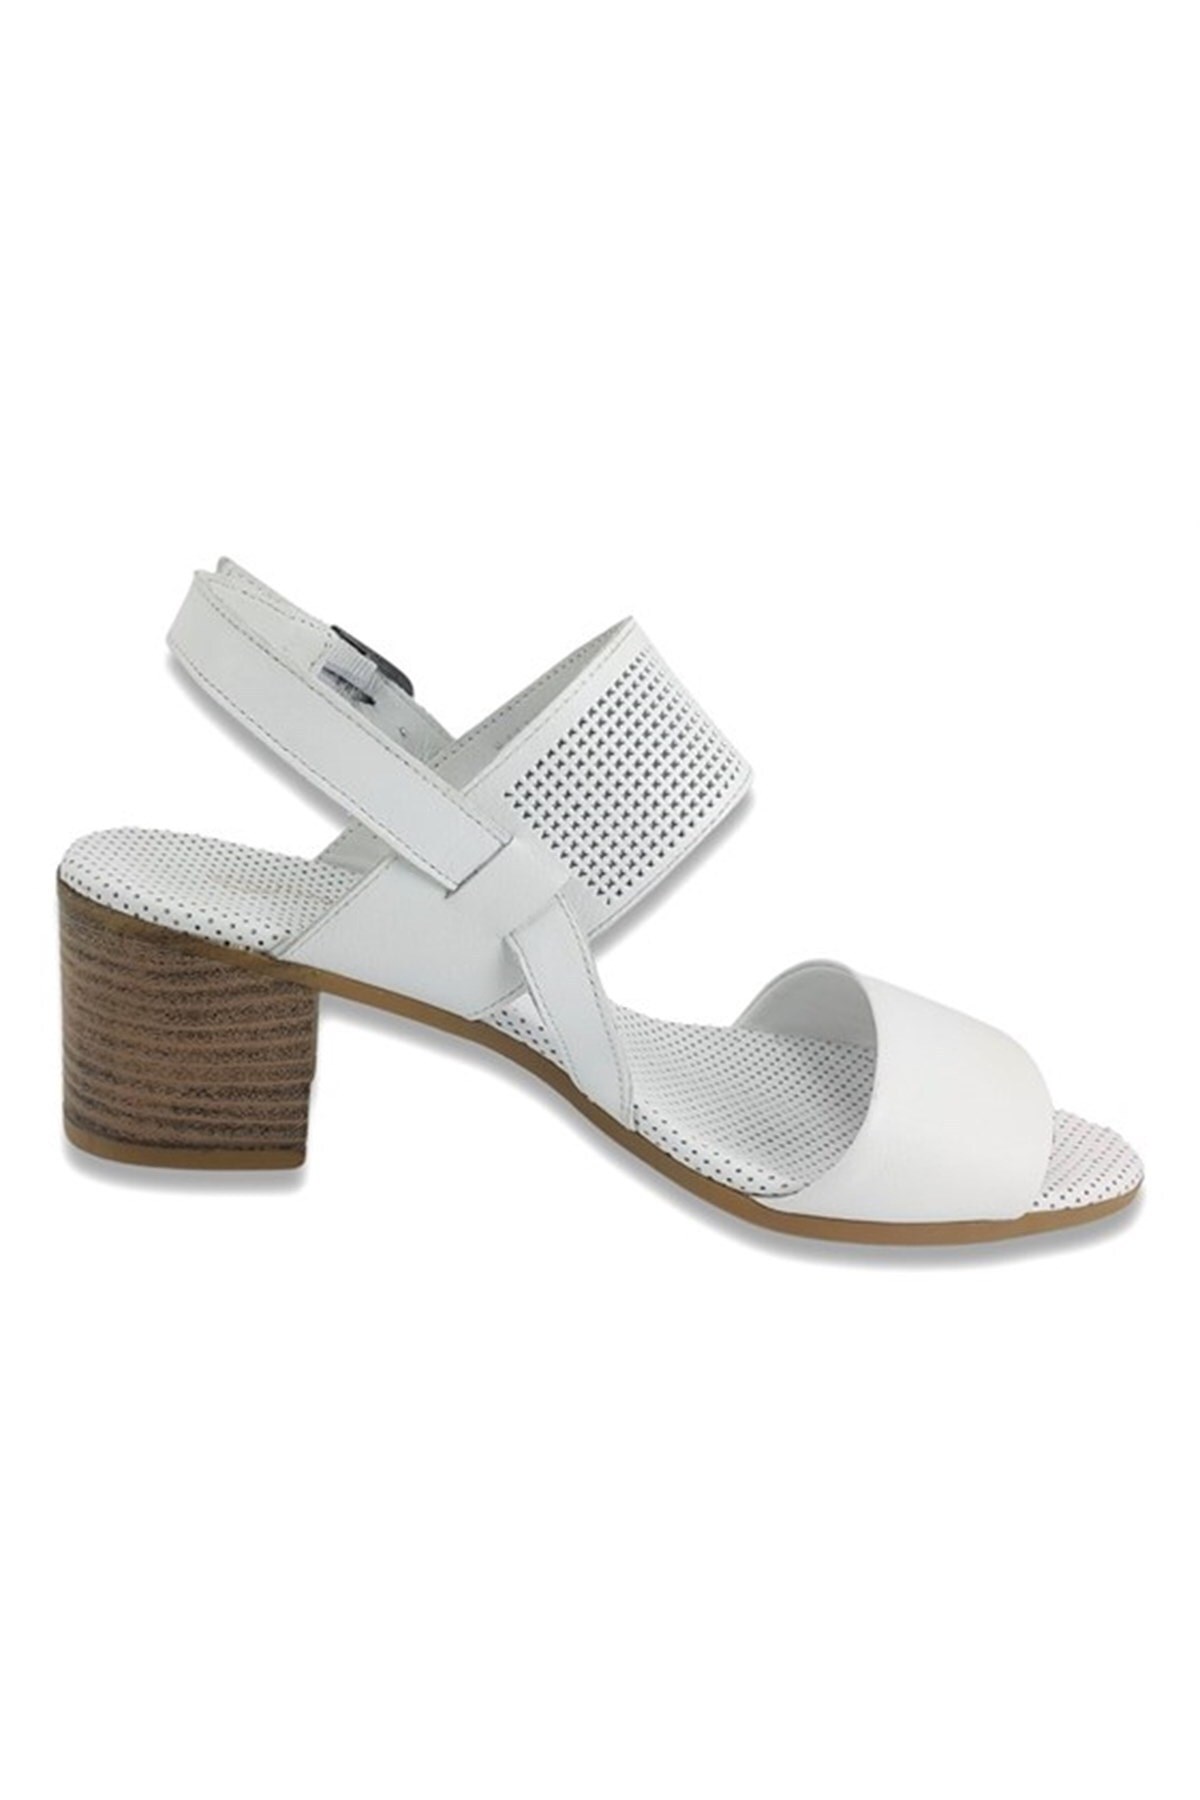 Mammamia Kadın Sandalet D22YS-1335 Beyaz Faber